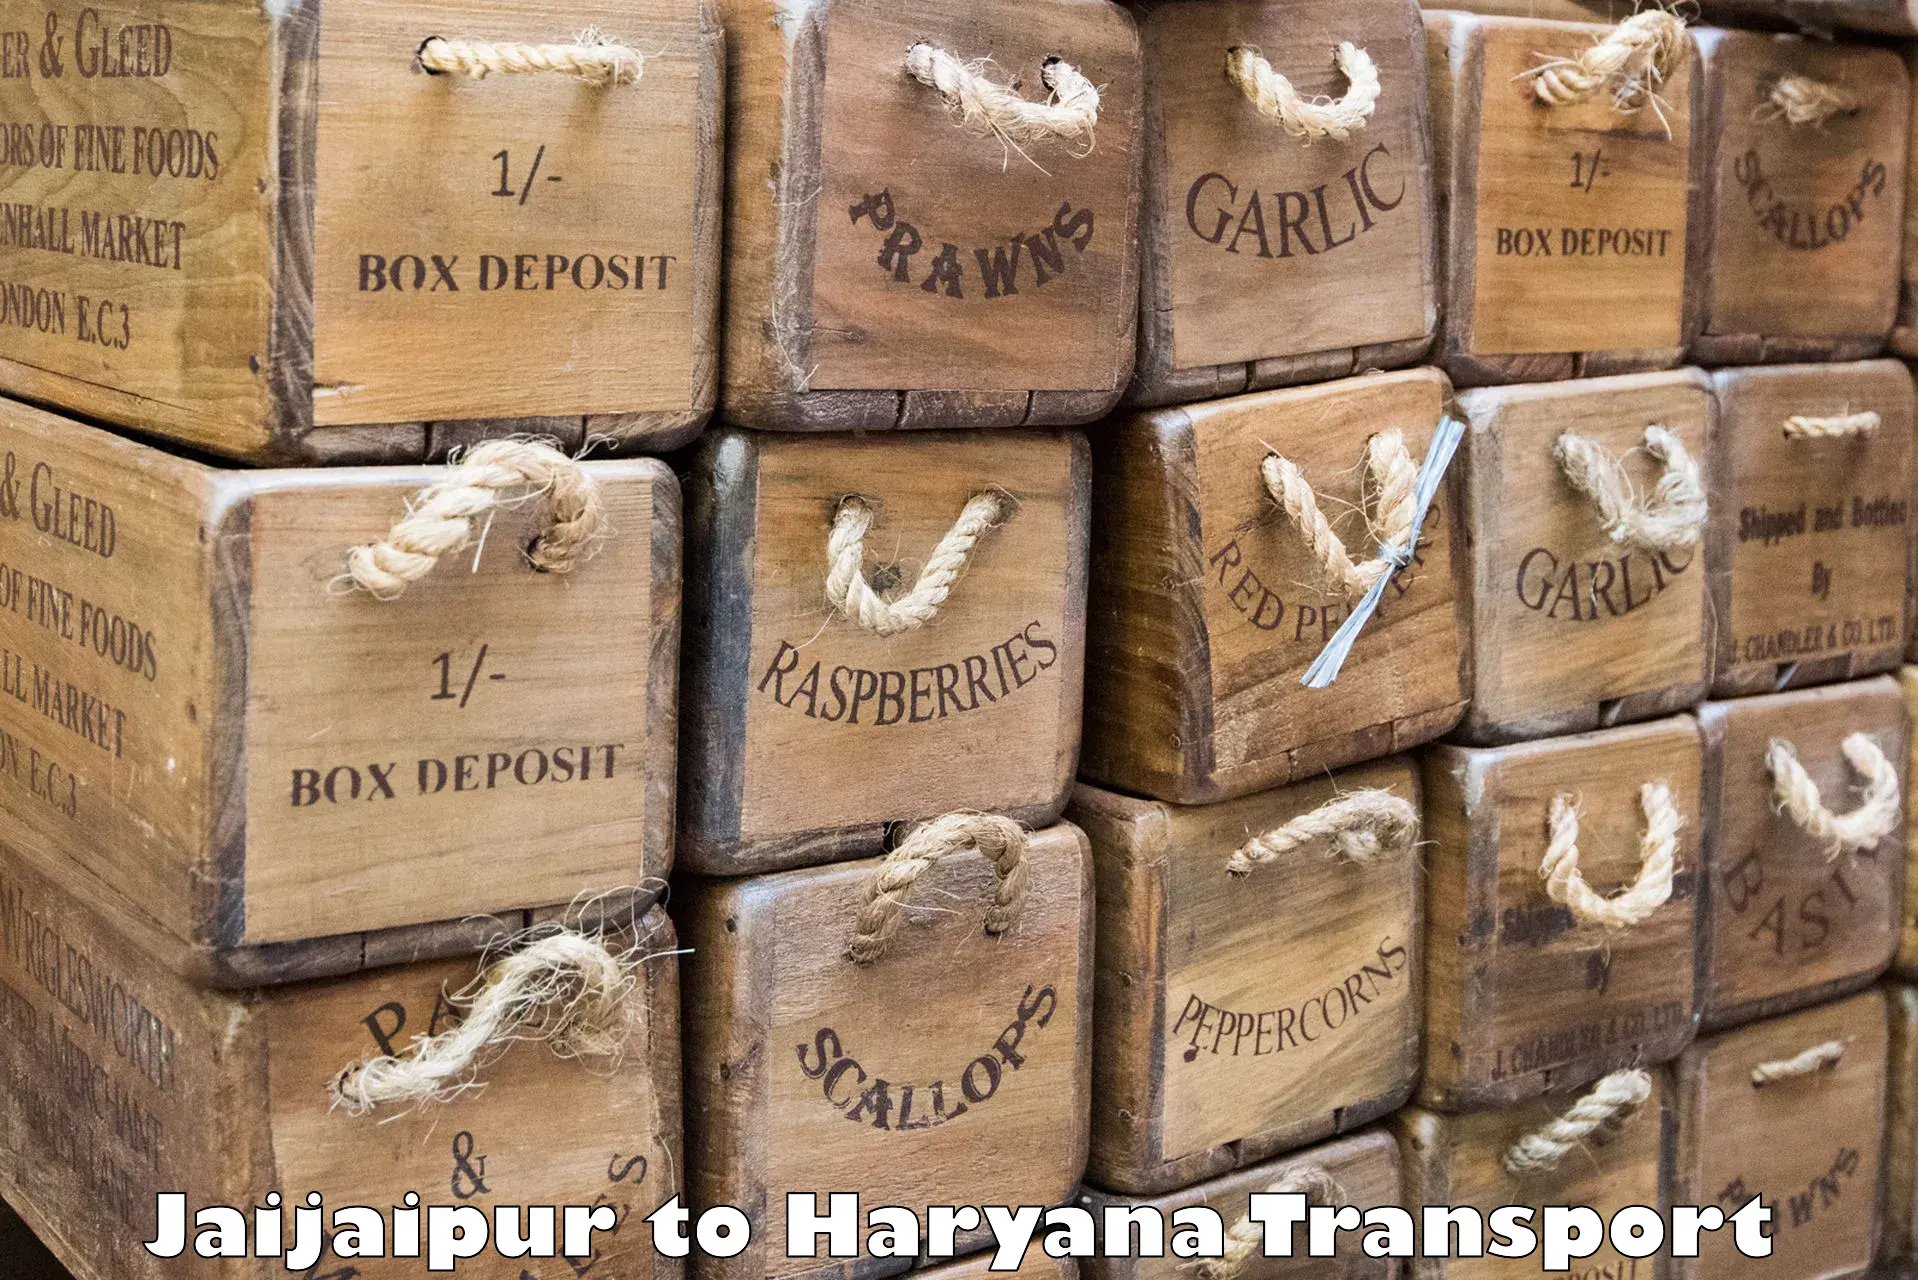 Express transport services Jaijaipur to Gurugram